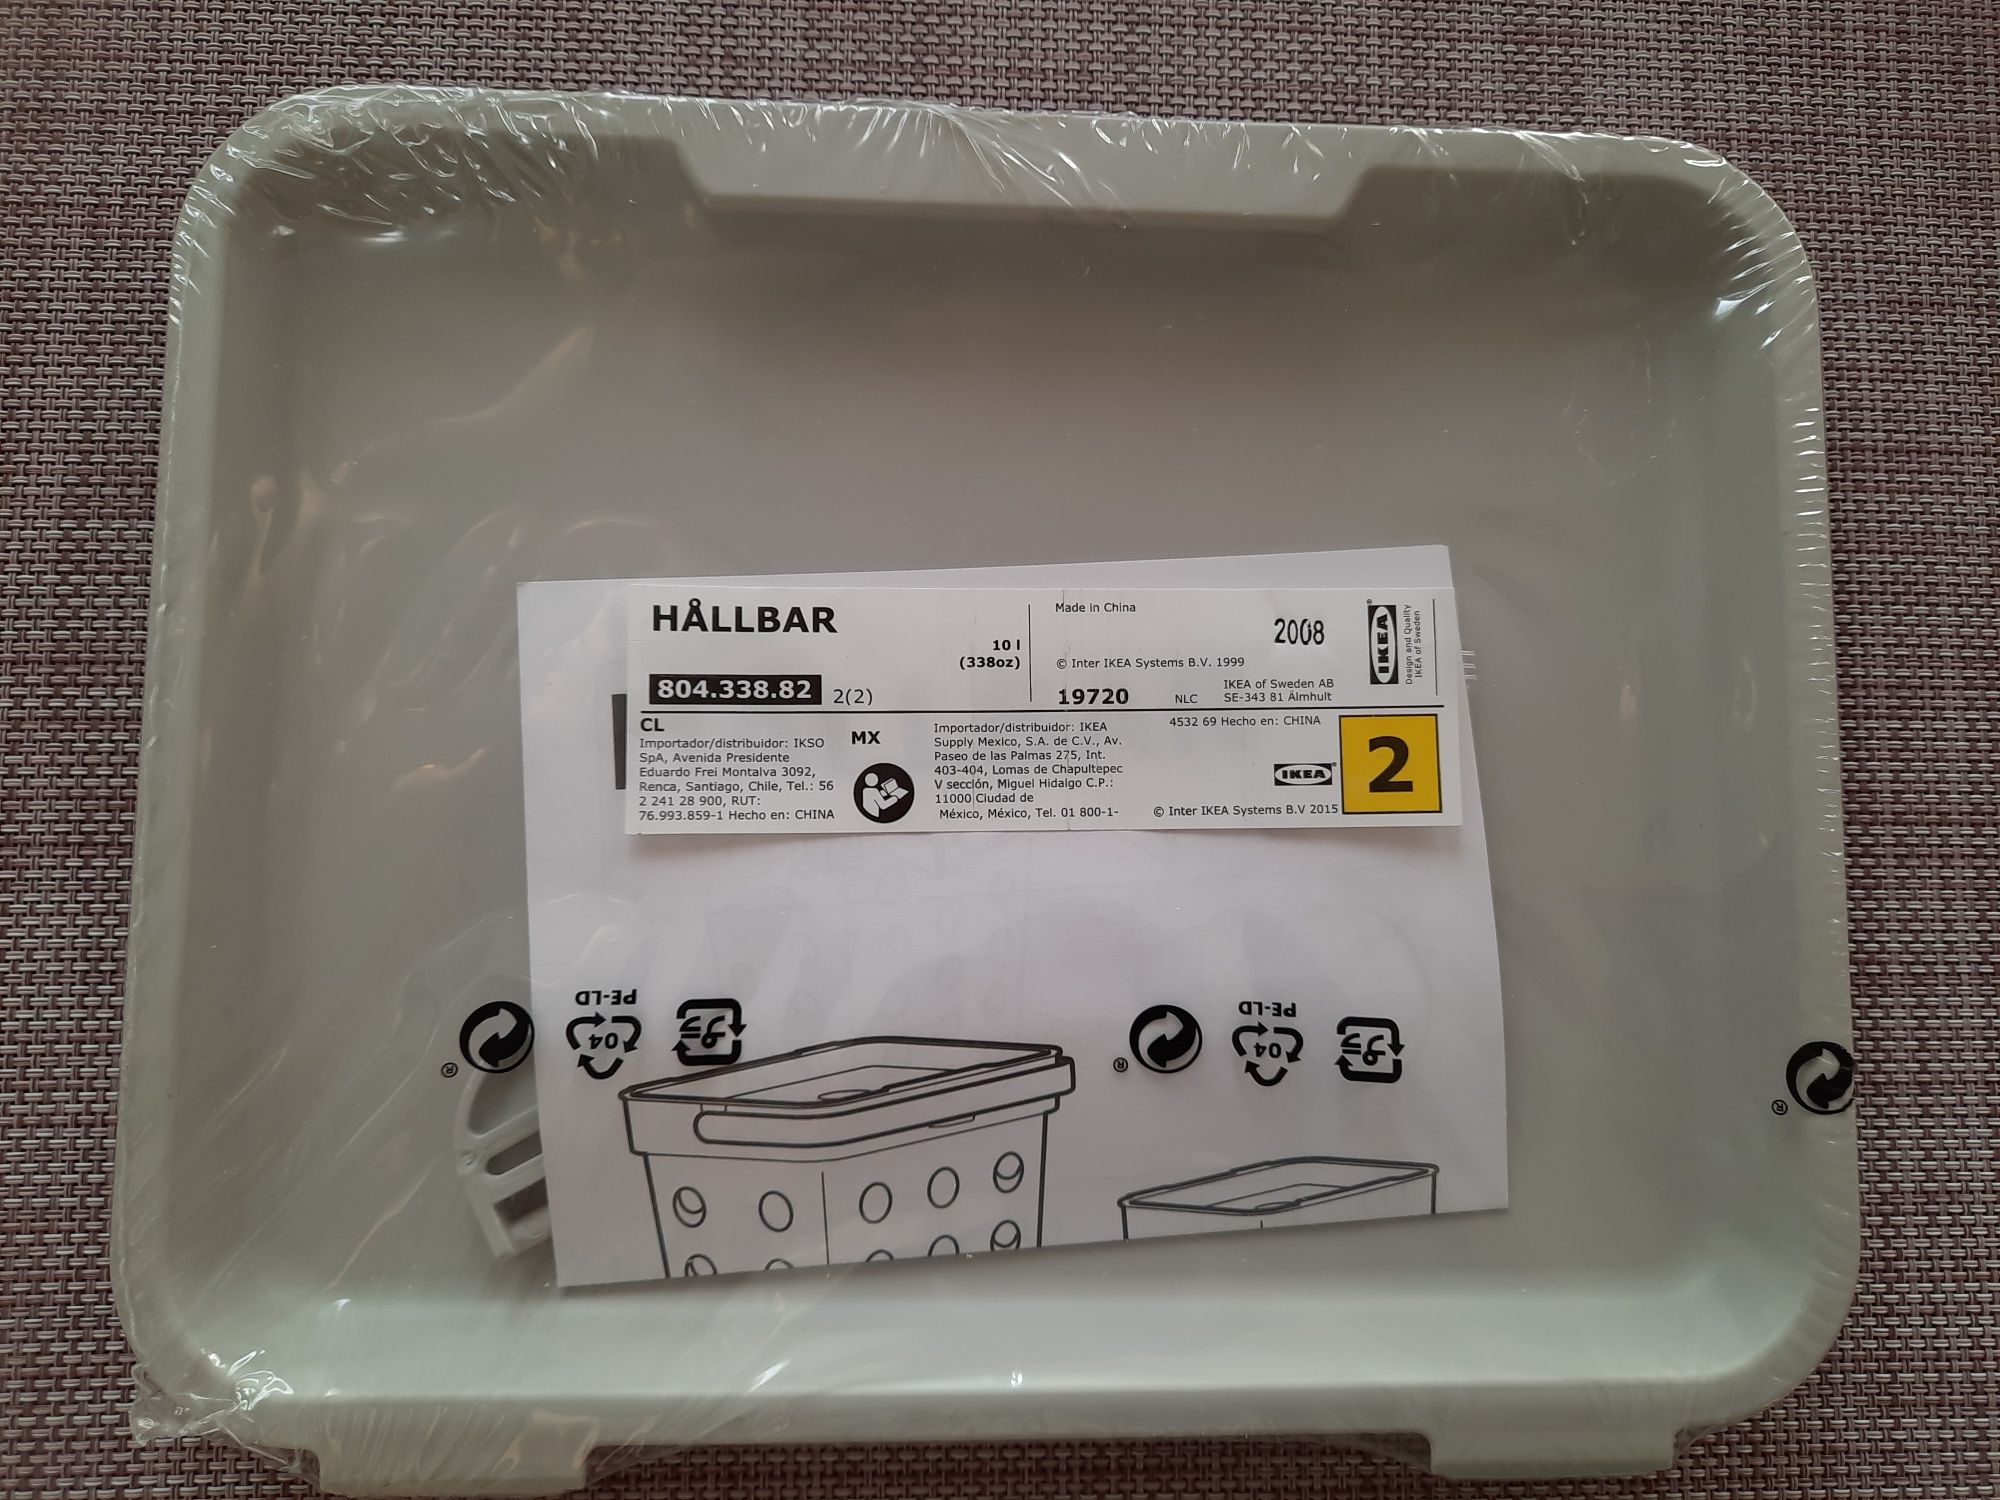 IKEA HALLBAR 804.338.82